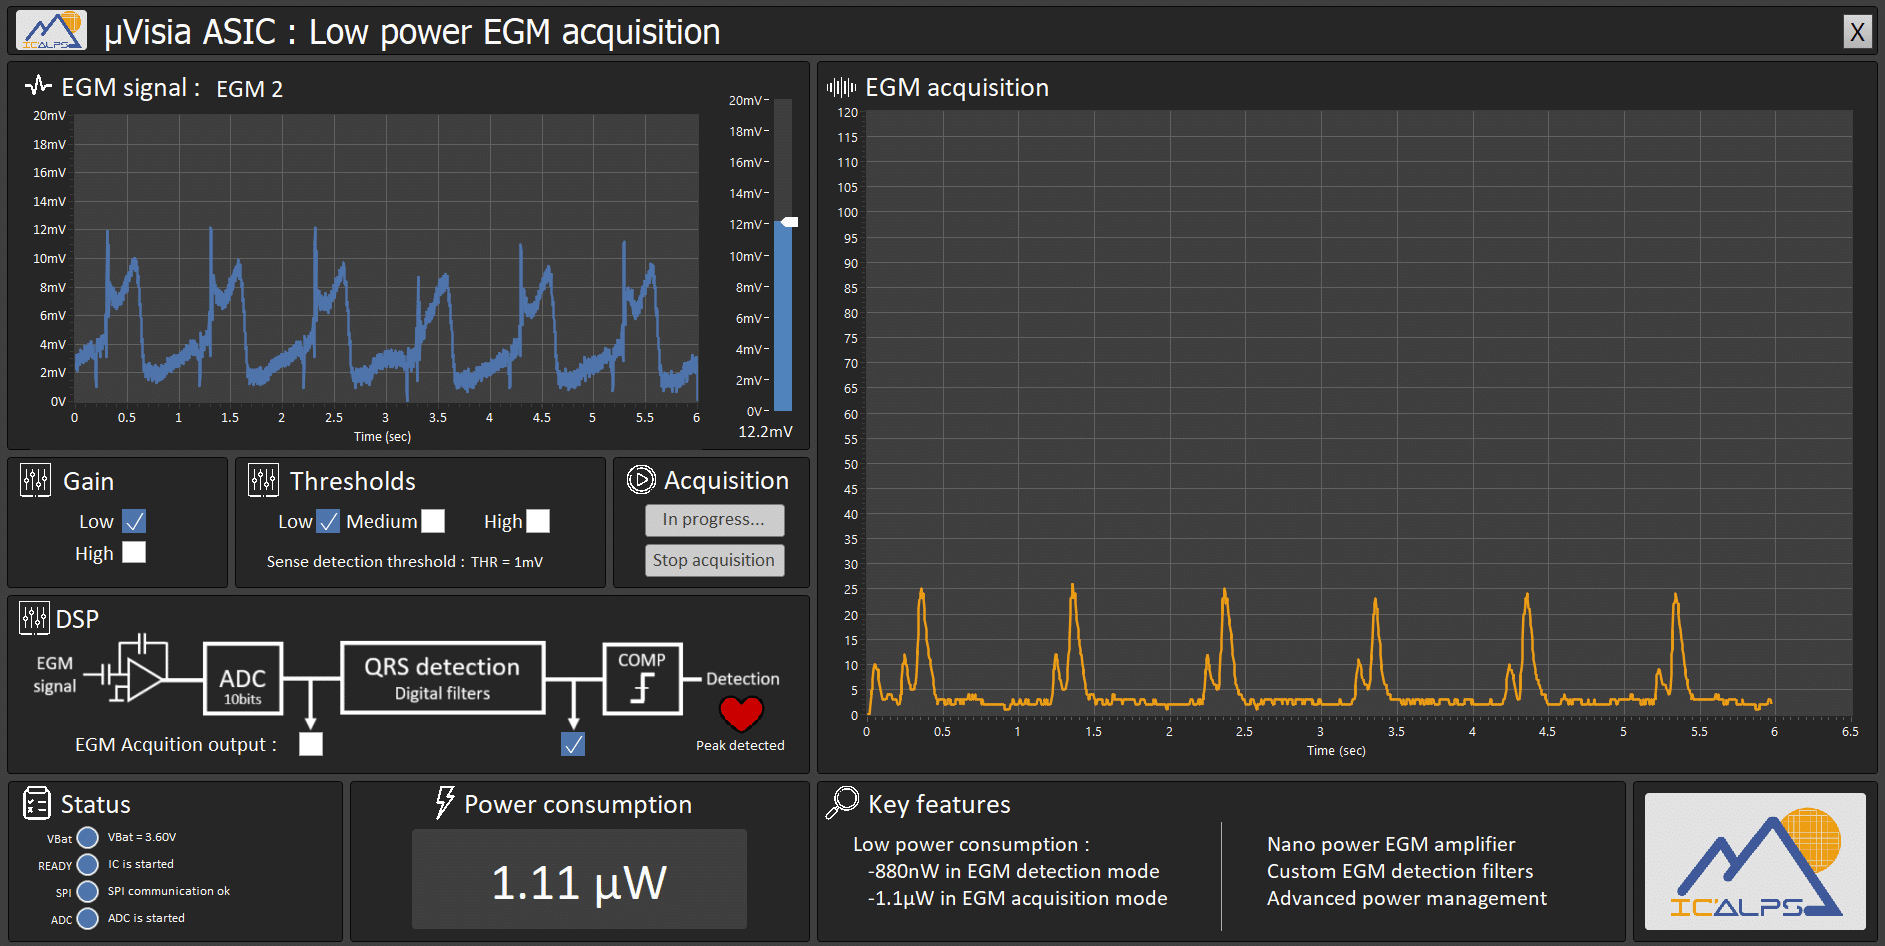 Demo: Low power EGM acquisition